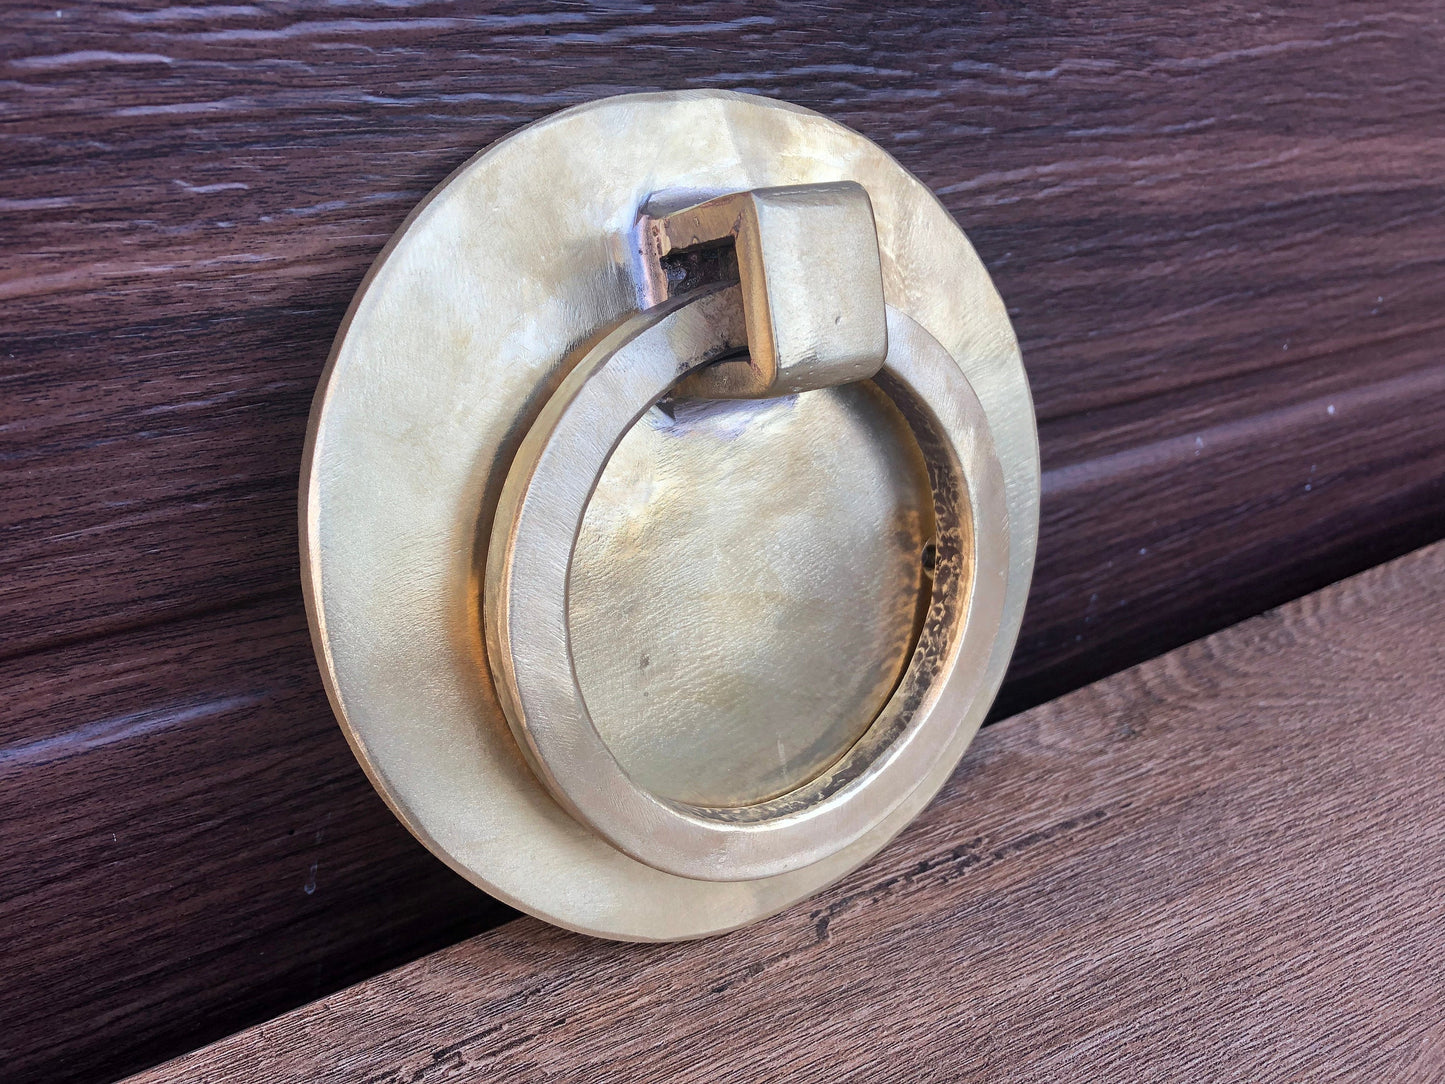 Bronze door knocker, door knocker, door pull, door ring, door puller,pull ring handle,bronze gifts,8th anniversary gift,engraved bronze gift